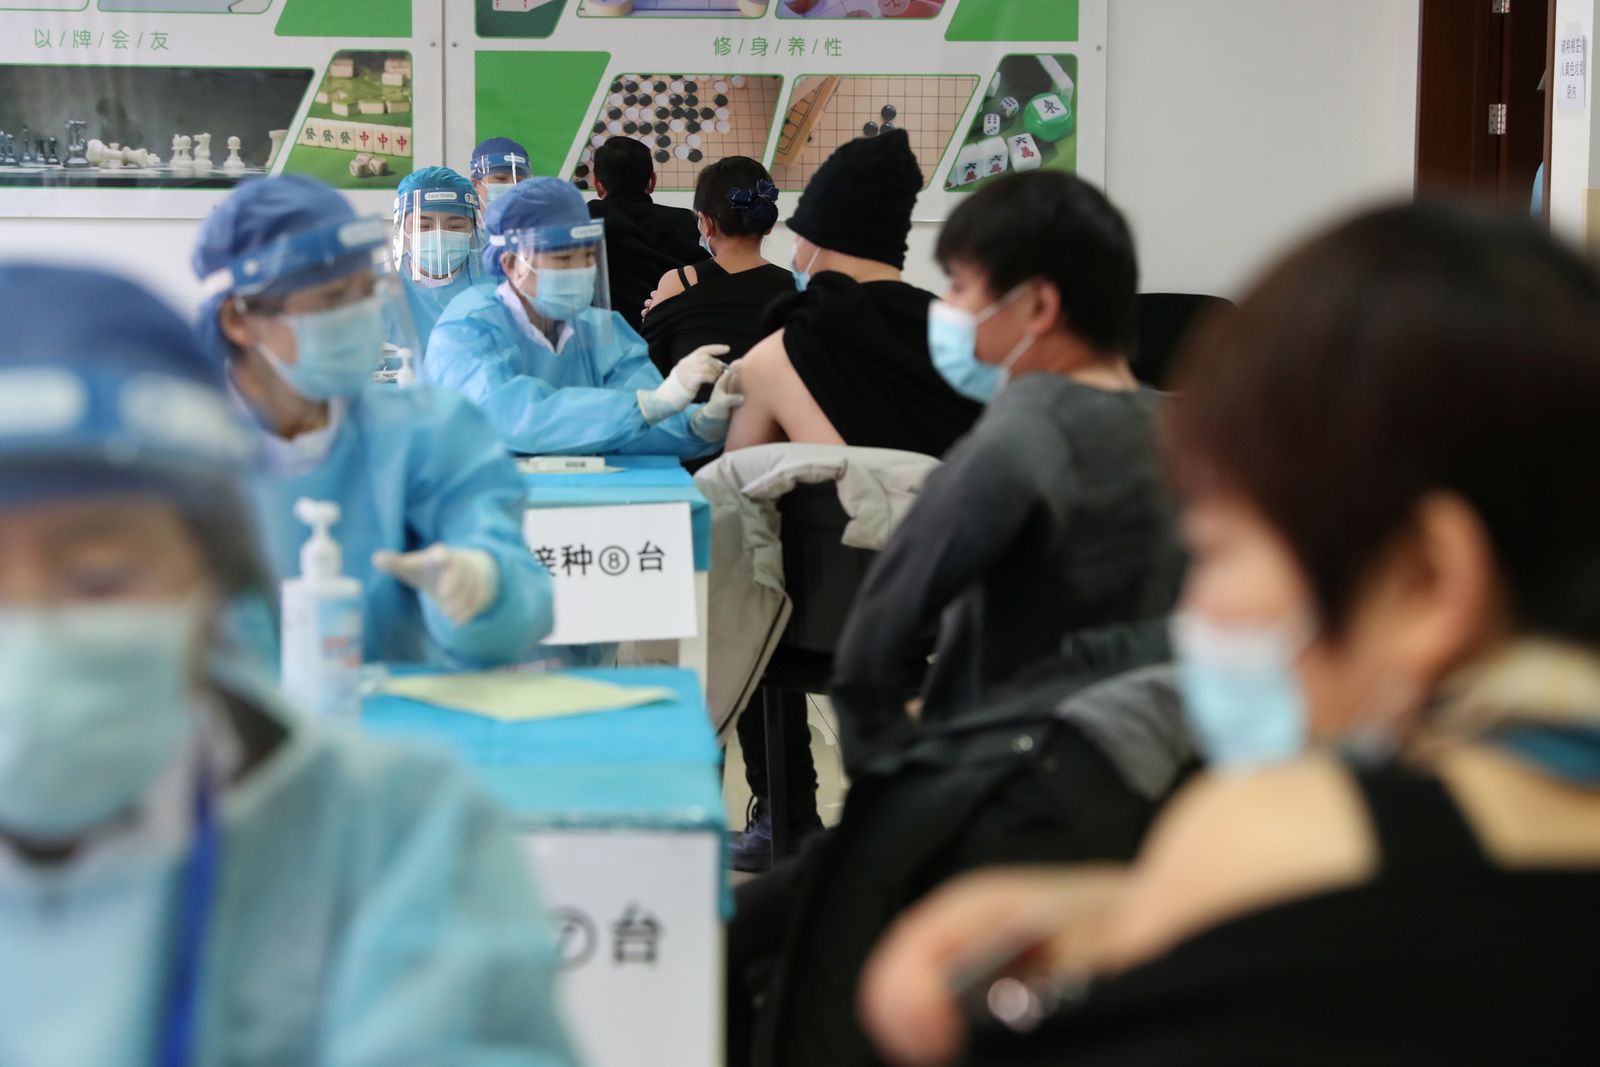 عاملون طبيون يرتدون بدلات واقية يديرون لقاح ضد مرض فيروس كورونا، في موقع تطعيم مؤقت في منطقة هايديان في بكين، الصين. 8 يناير 2021 - via REUTERS